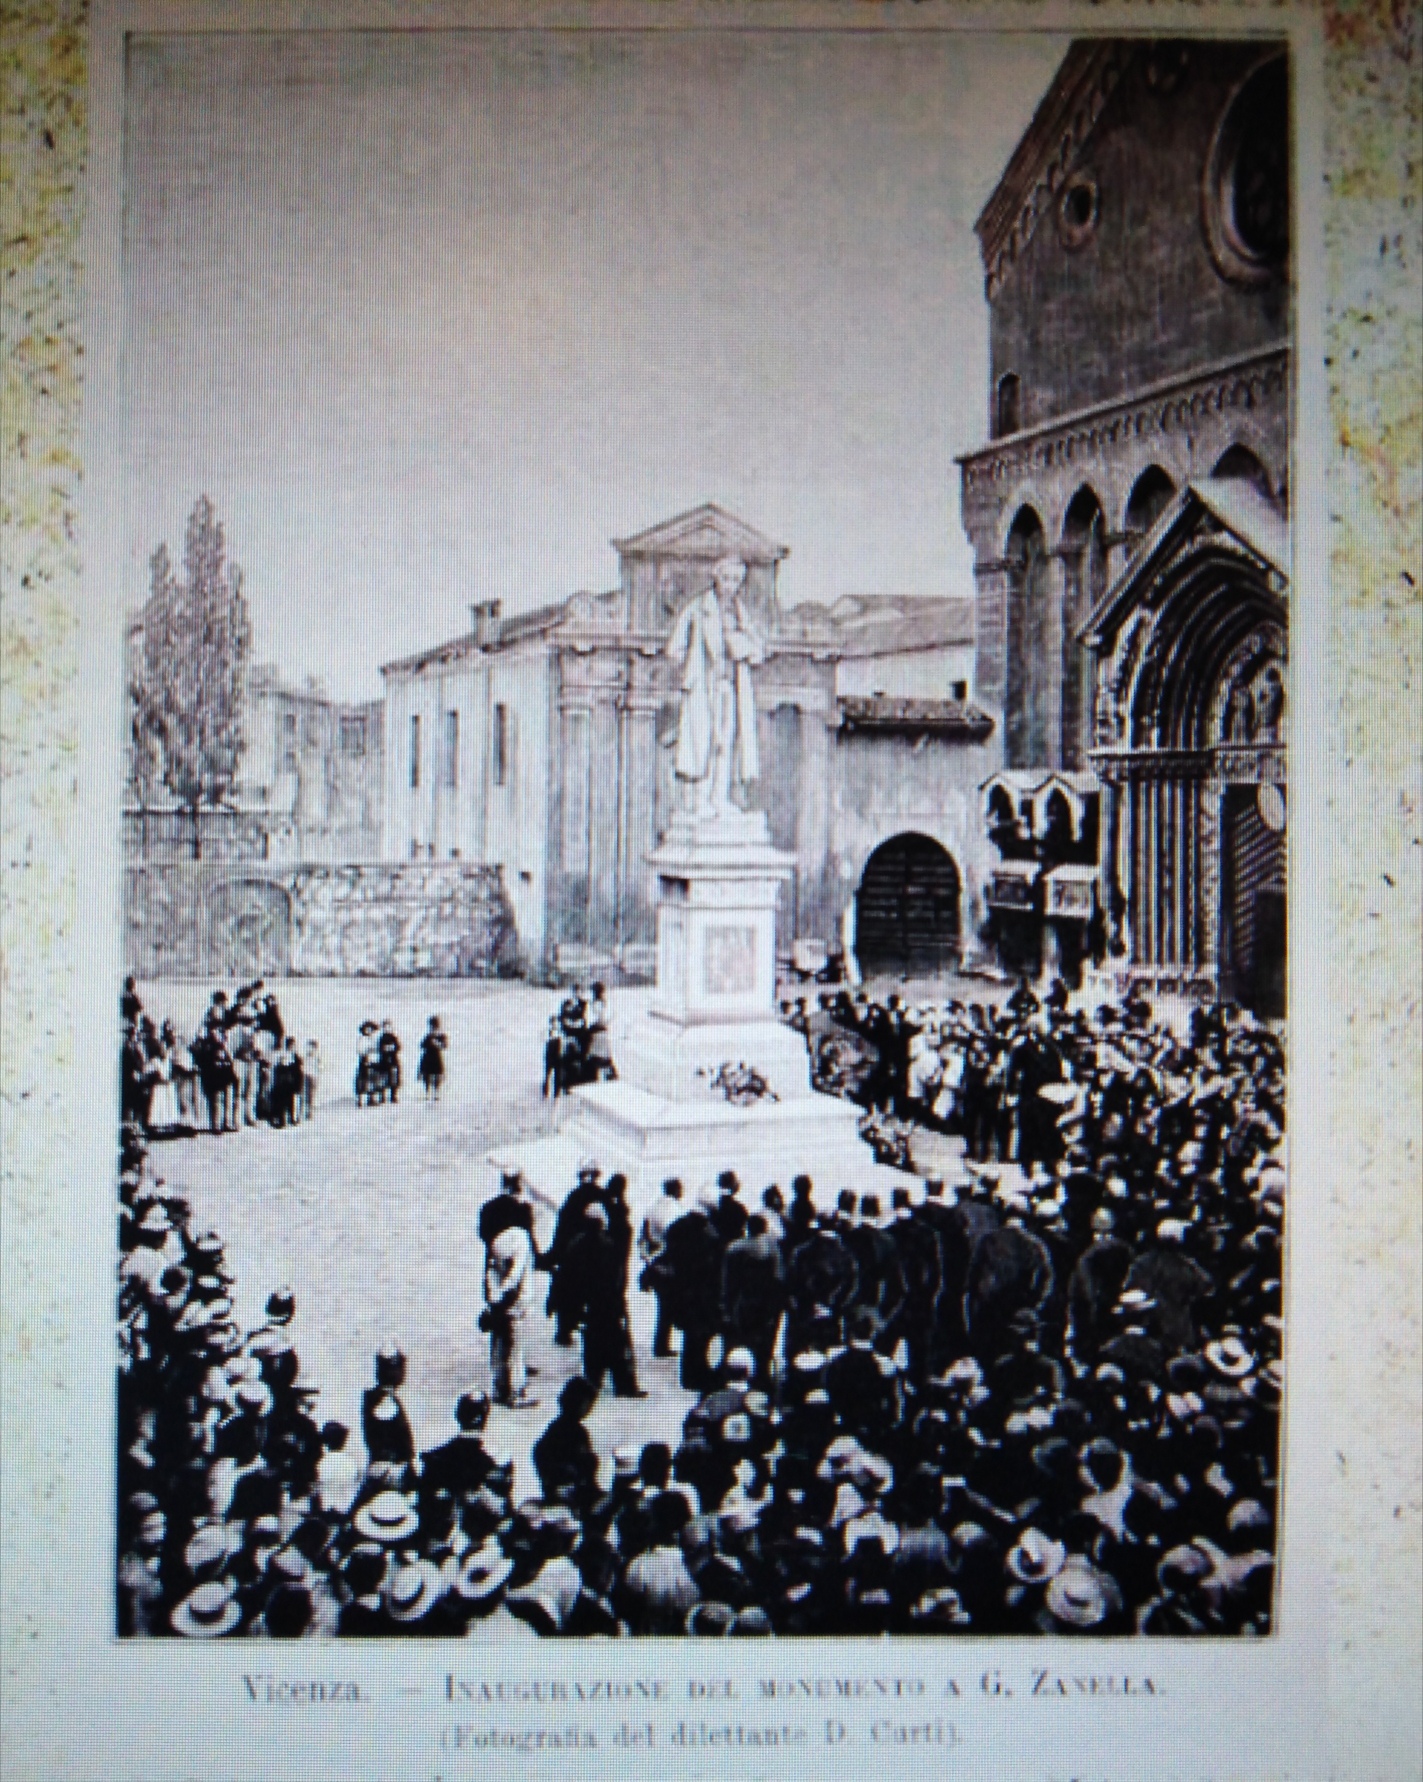 Inaugurazione del monumento a Giacomo Zanella